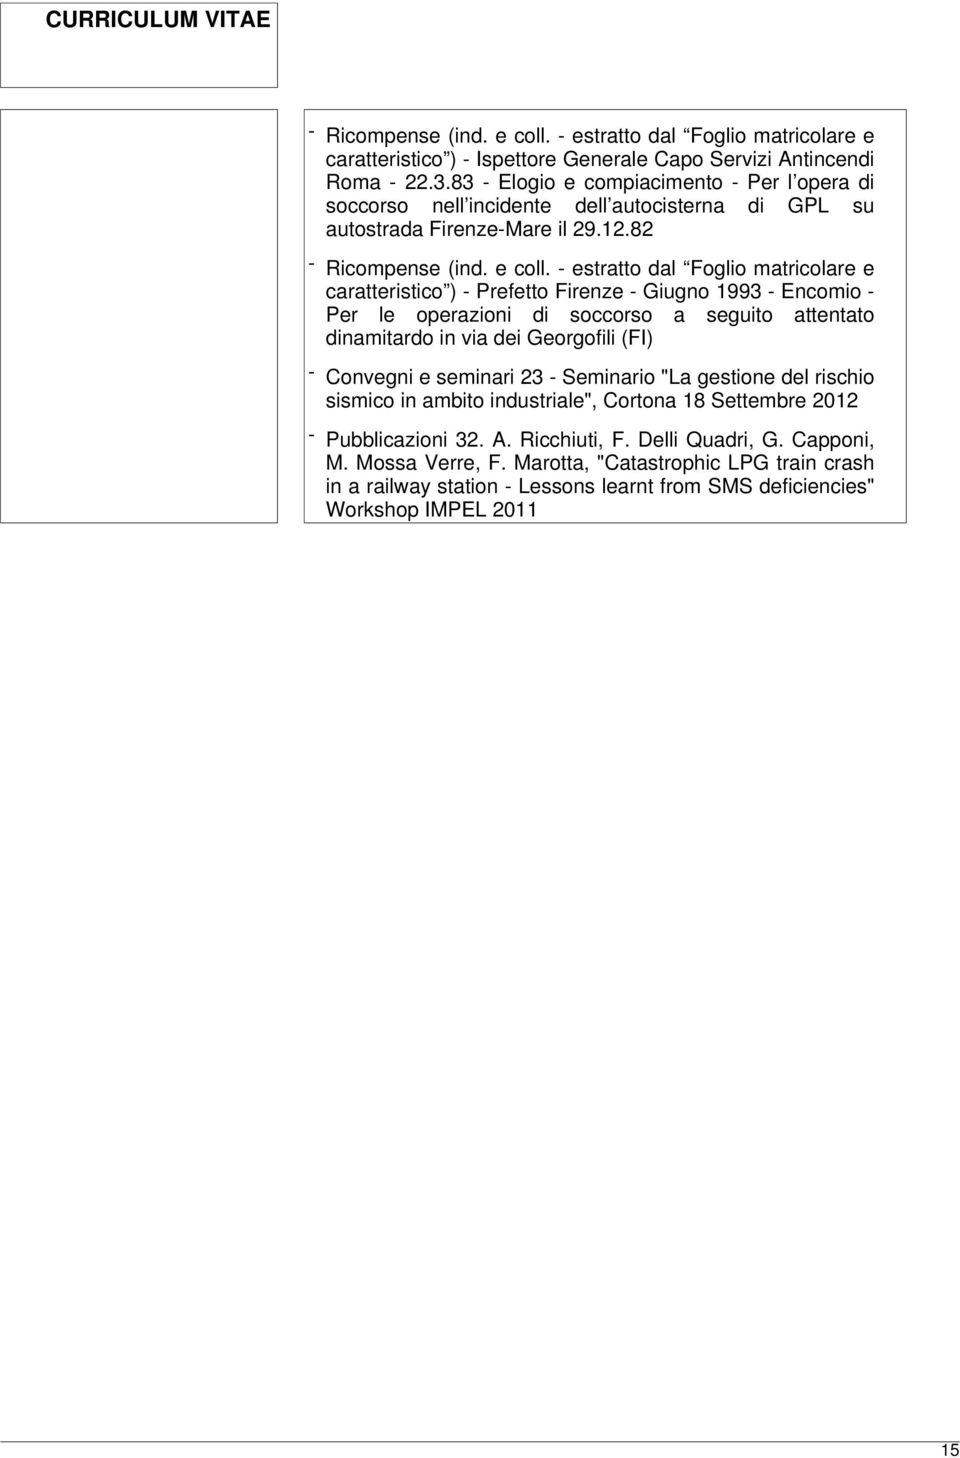 82 caratteristico ) - Prefetto Firenze - Giugno 1993 - Encomio - Per le operazioni di soccorso a seguito attentato dinamitardo in via dei Georgofili (FI) - Convegni e